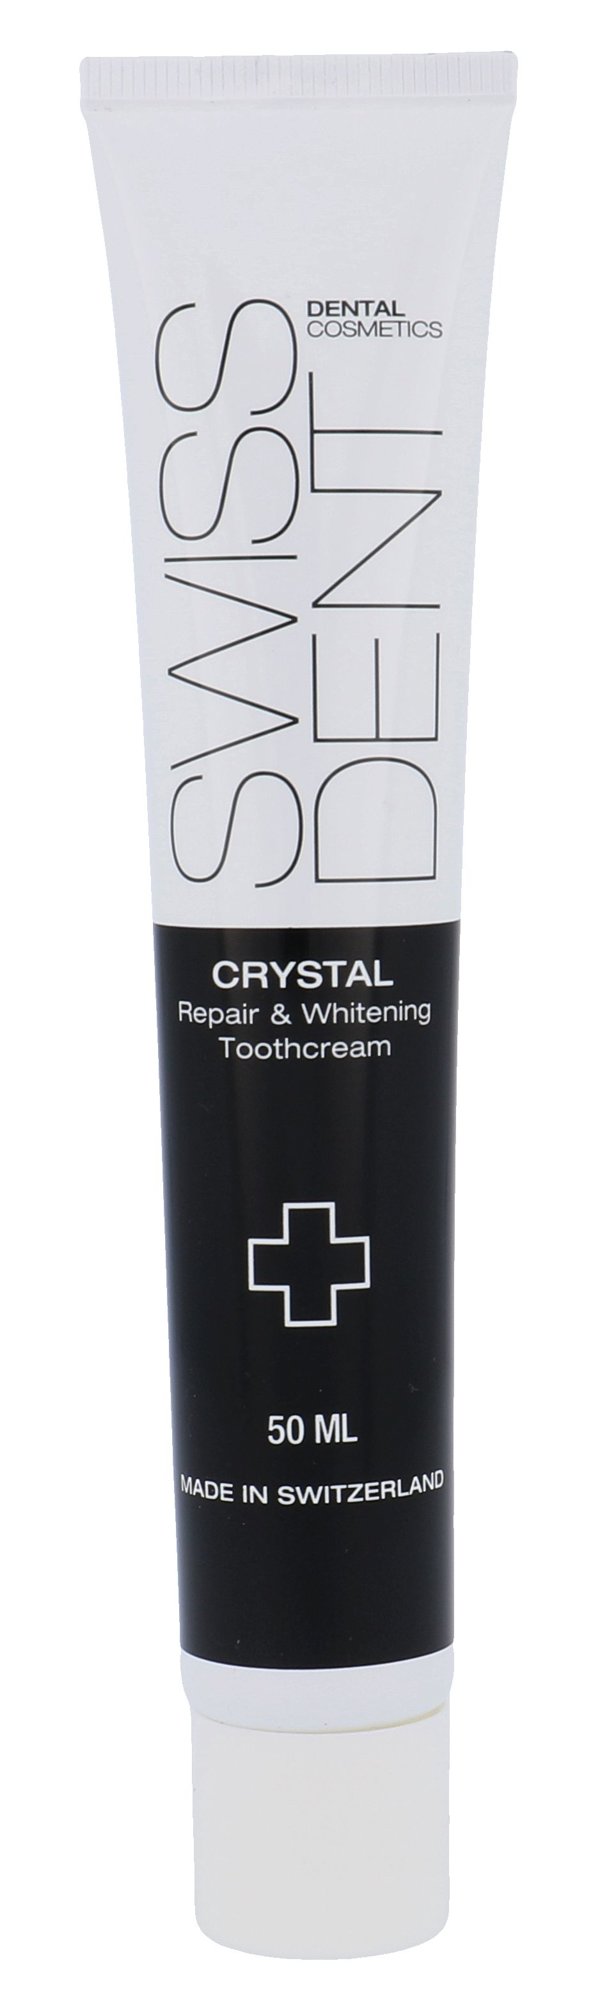 Swissdent Crystal Repair & Whitening Toothcream